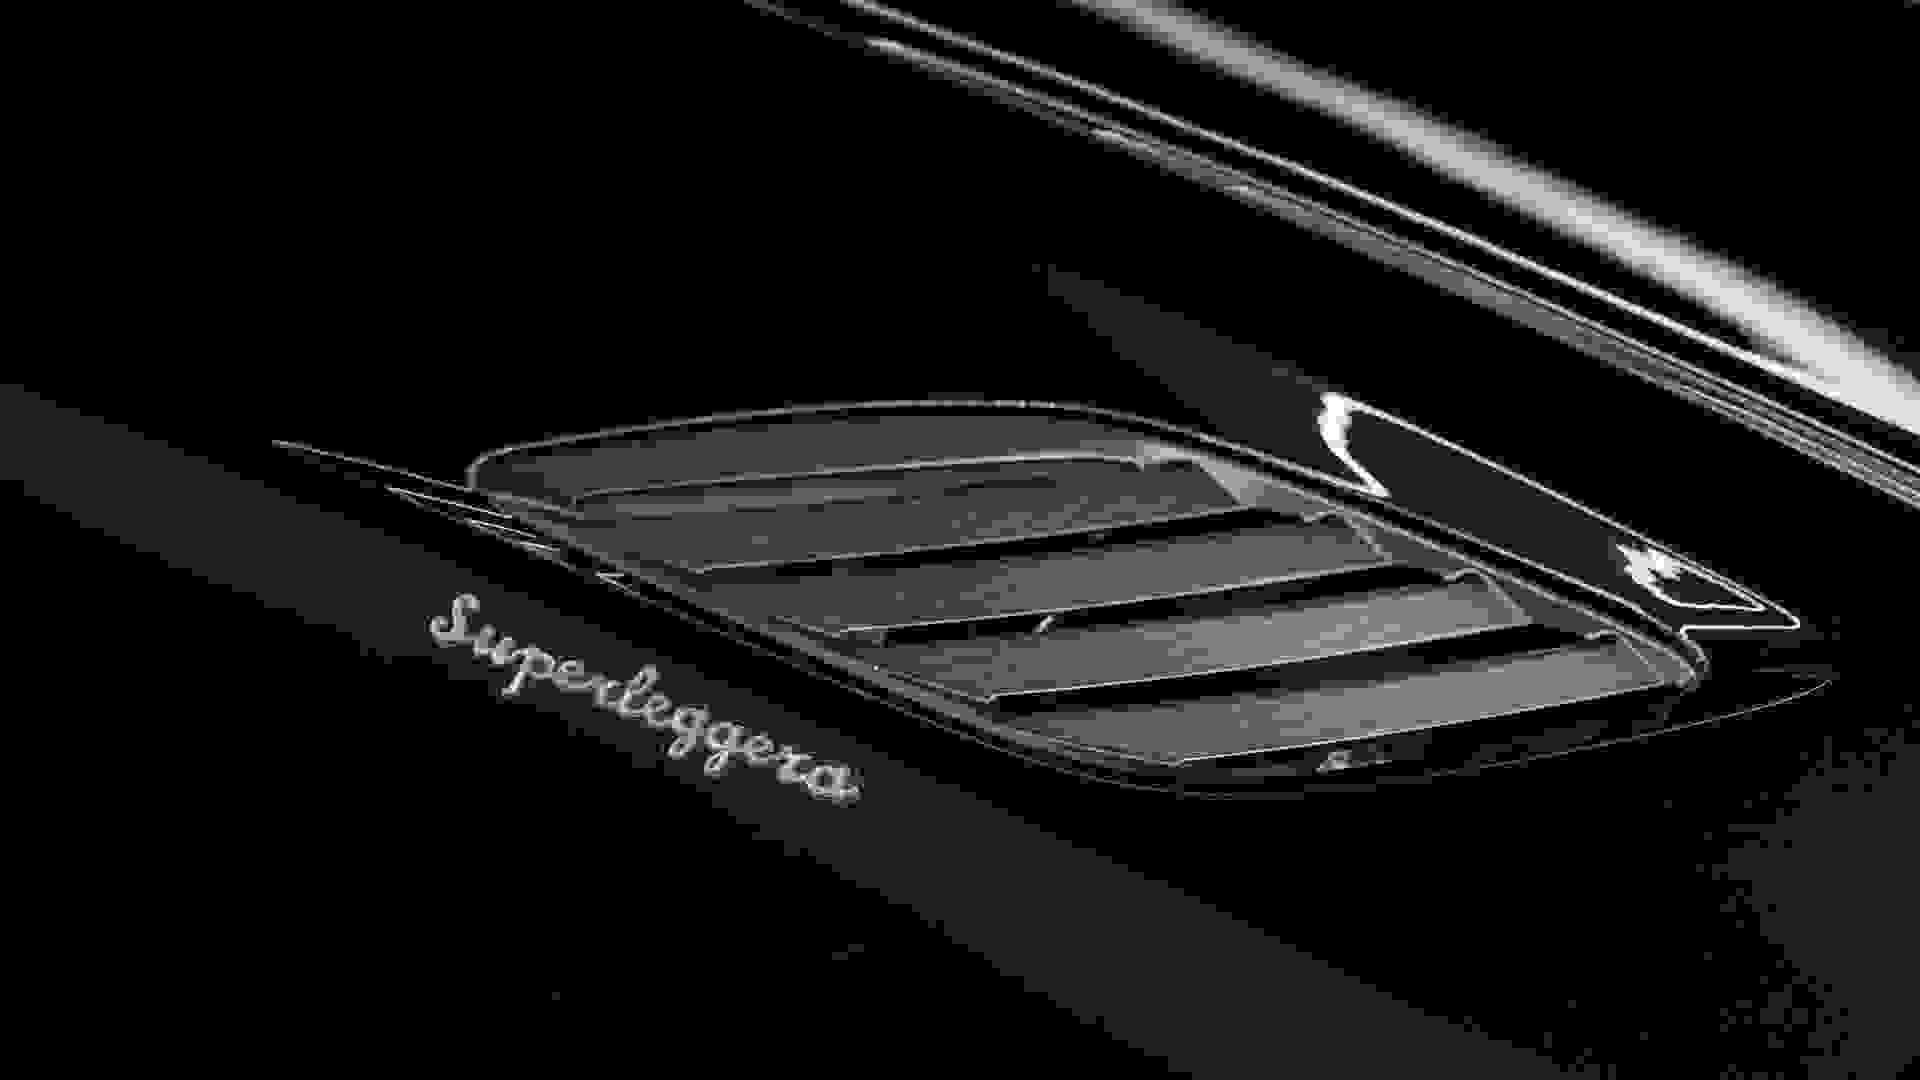 Aston Martin DBS Superleggera Tag Heuer Edition Photo a89531f0-4511-4234-b768-6e395d785142.jpg